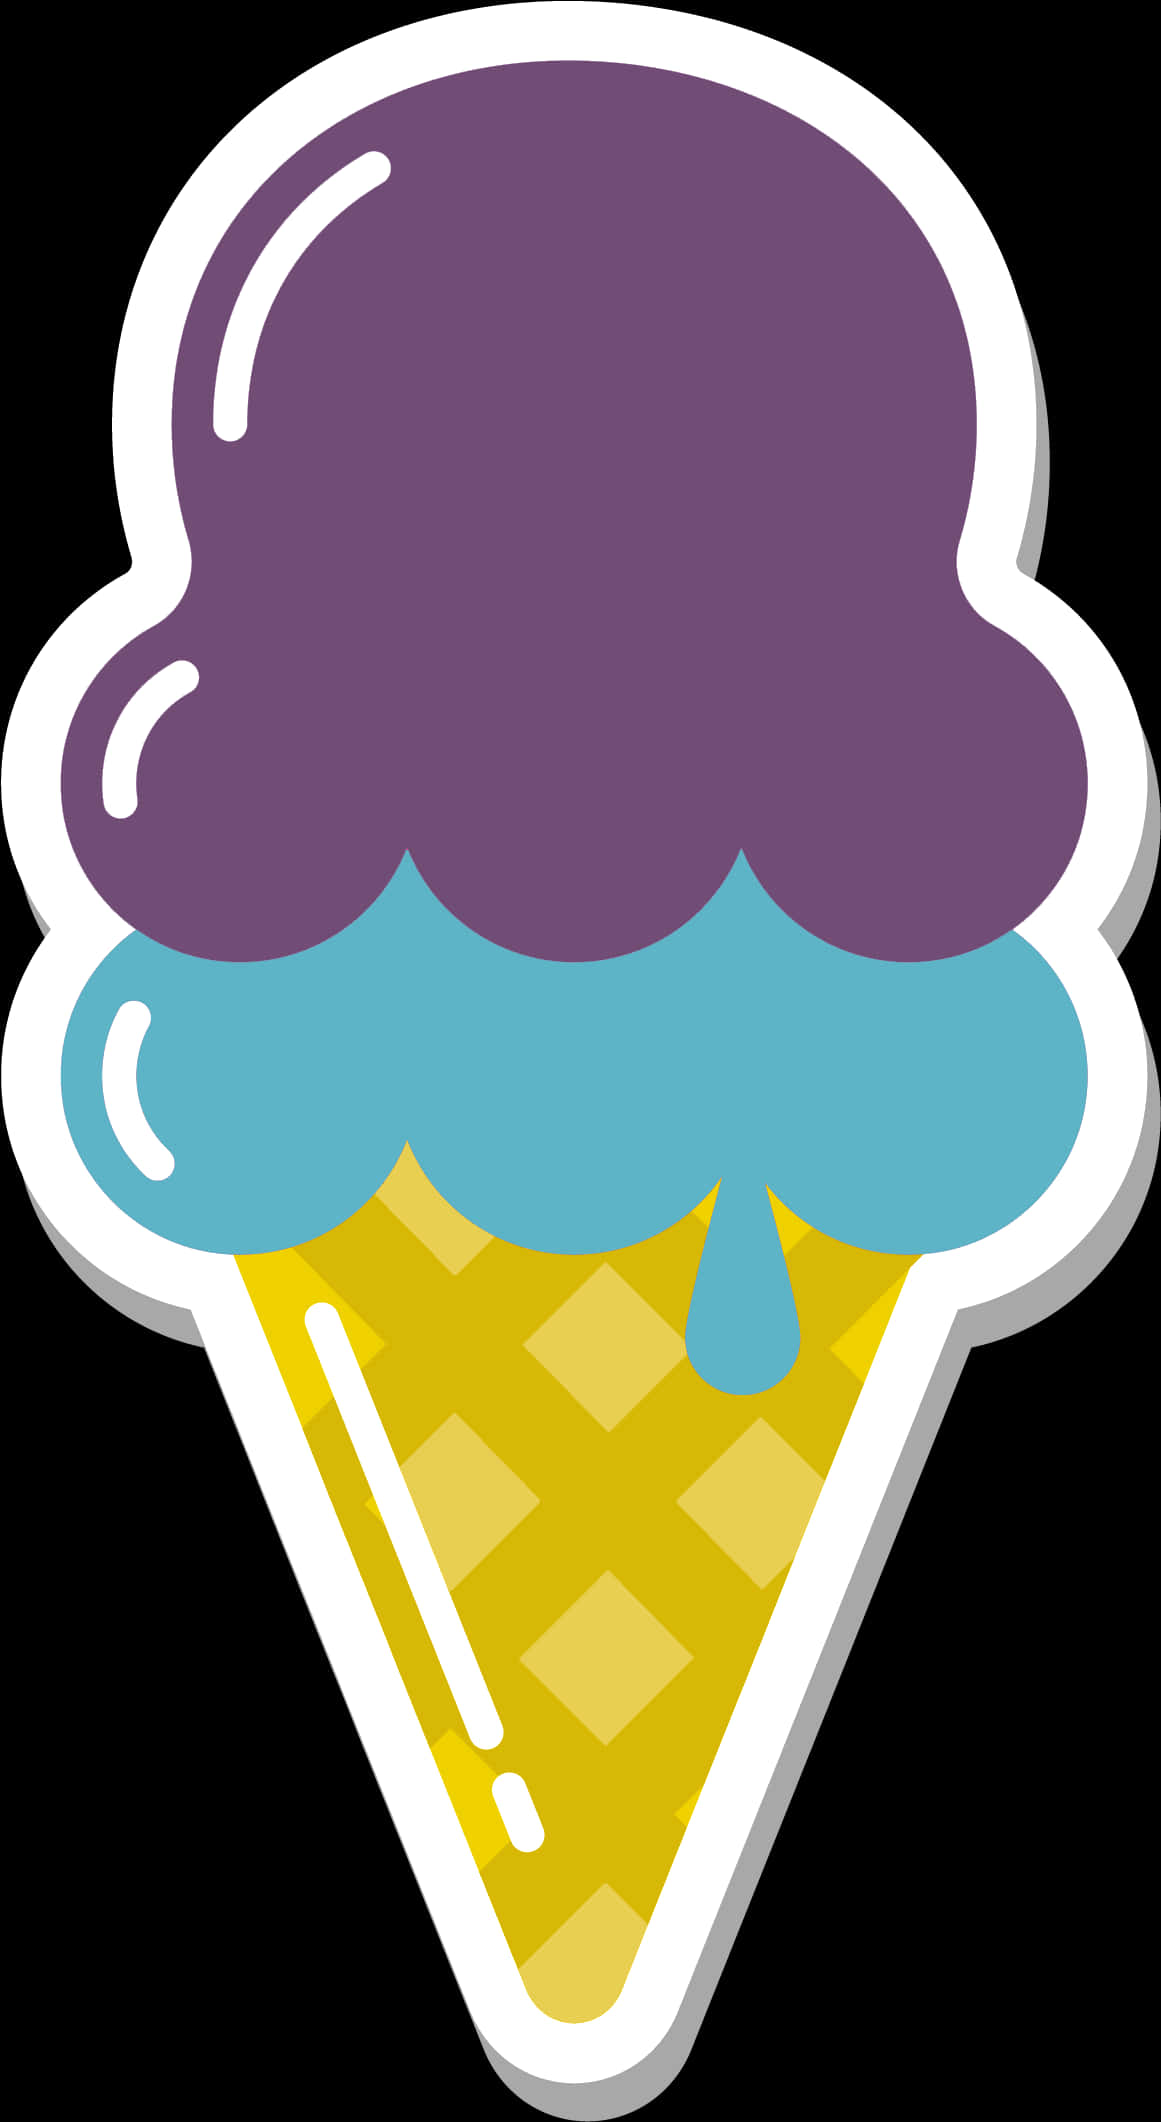 Colorful Ice Cream Cone Clipart